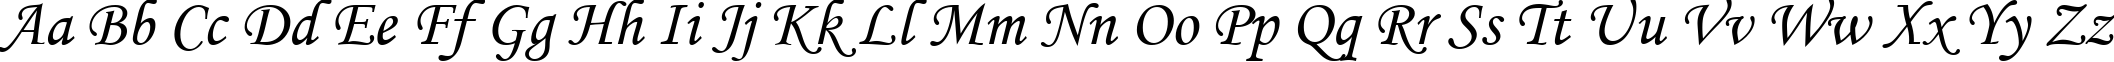 Пример написания английского алфавита шрифтом font353